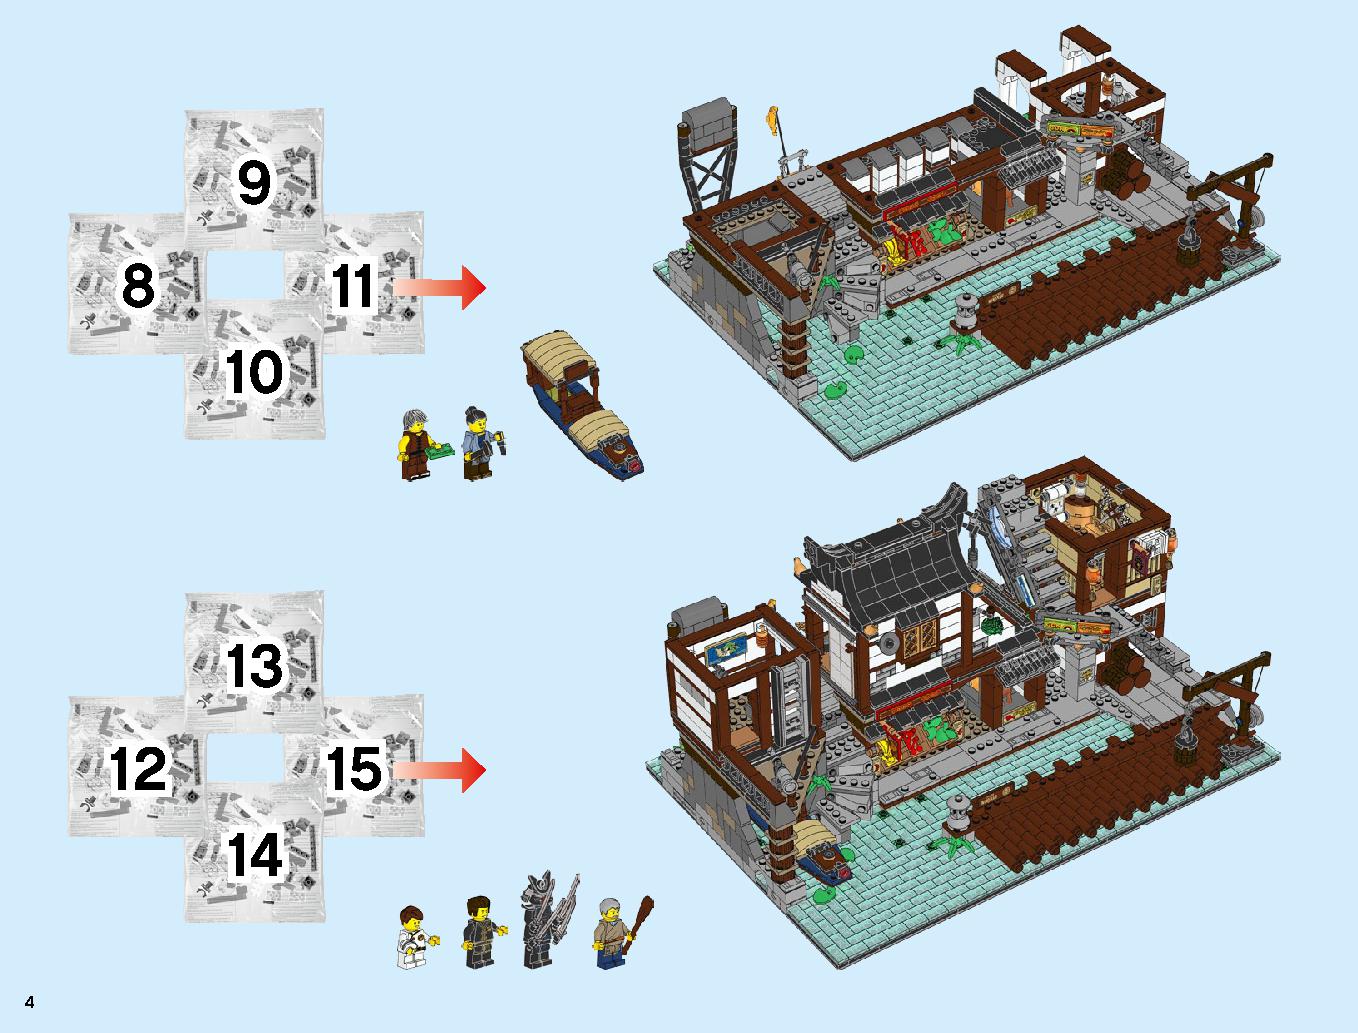 ニンジャゴーシティ・ポートパーク 70657 レゴの商品情報 レゴの説明書・組立方法 4 page